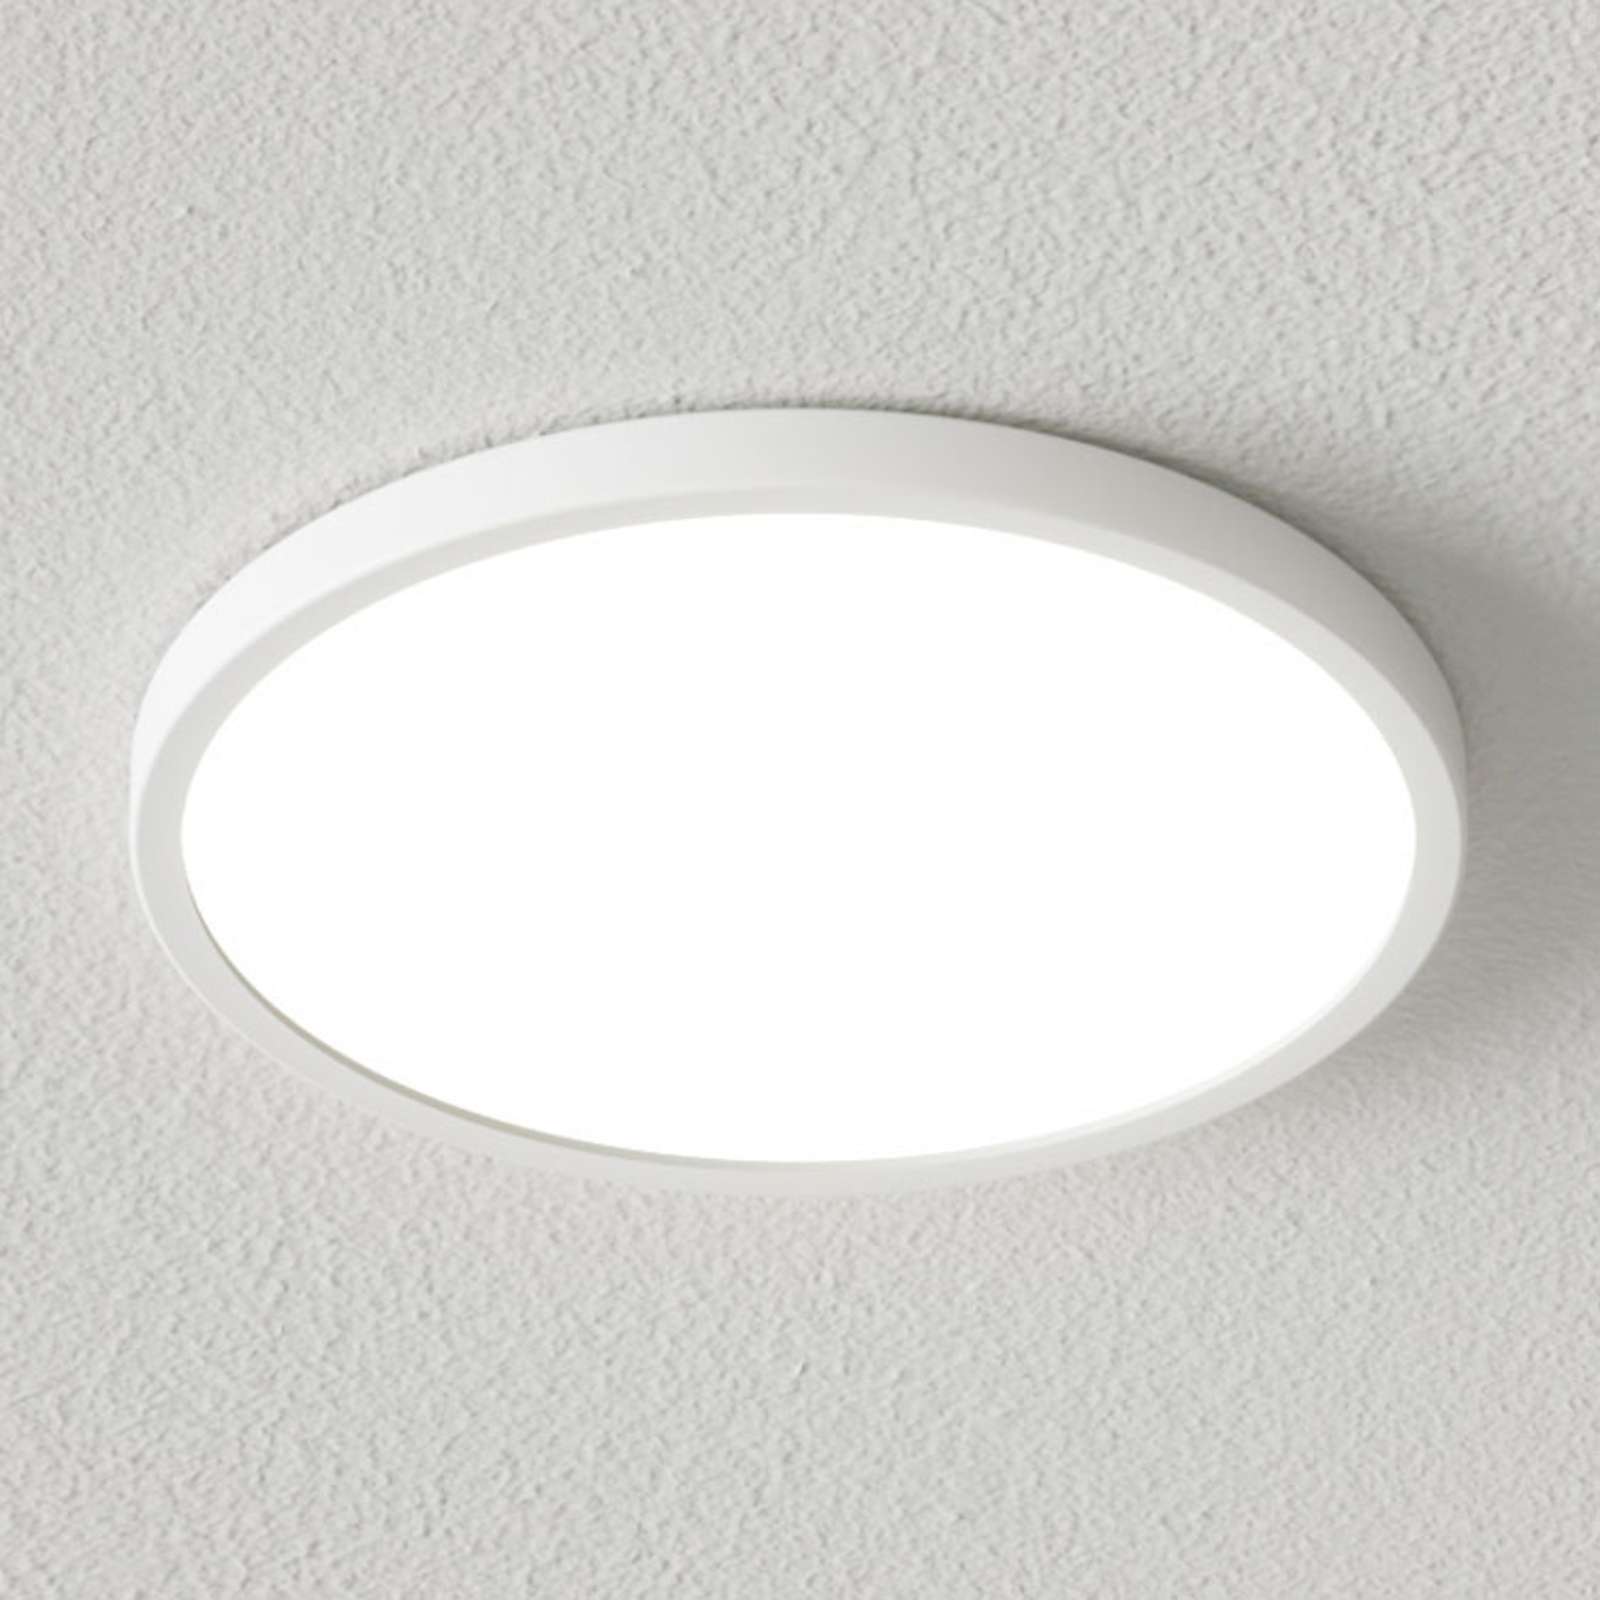 Toepassen Doe het niet bros Dimbare LED plafondlamp Solvie in wit | Lampen24.nl